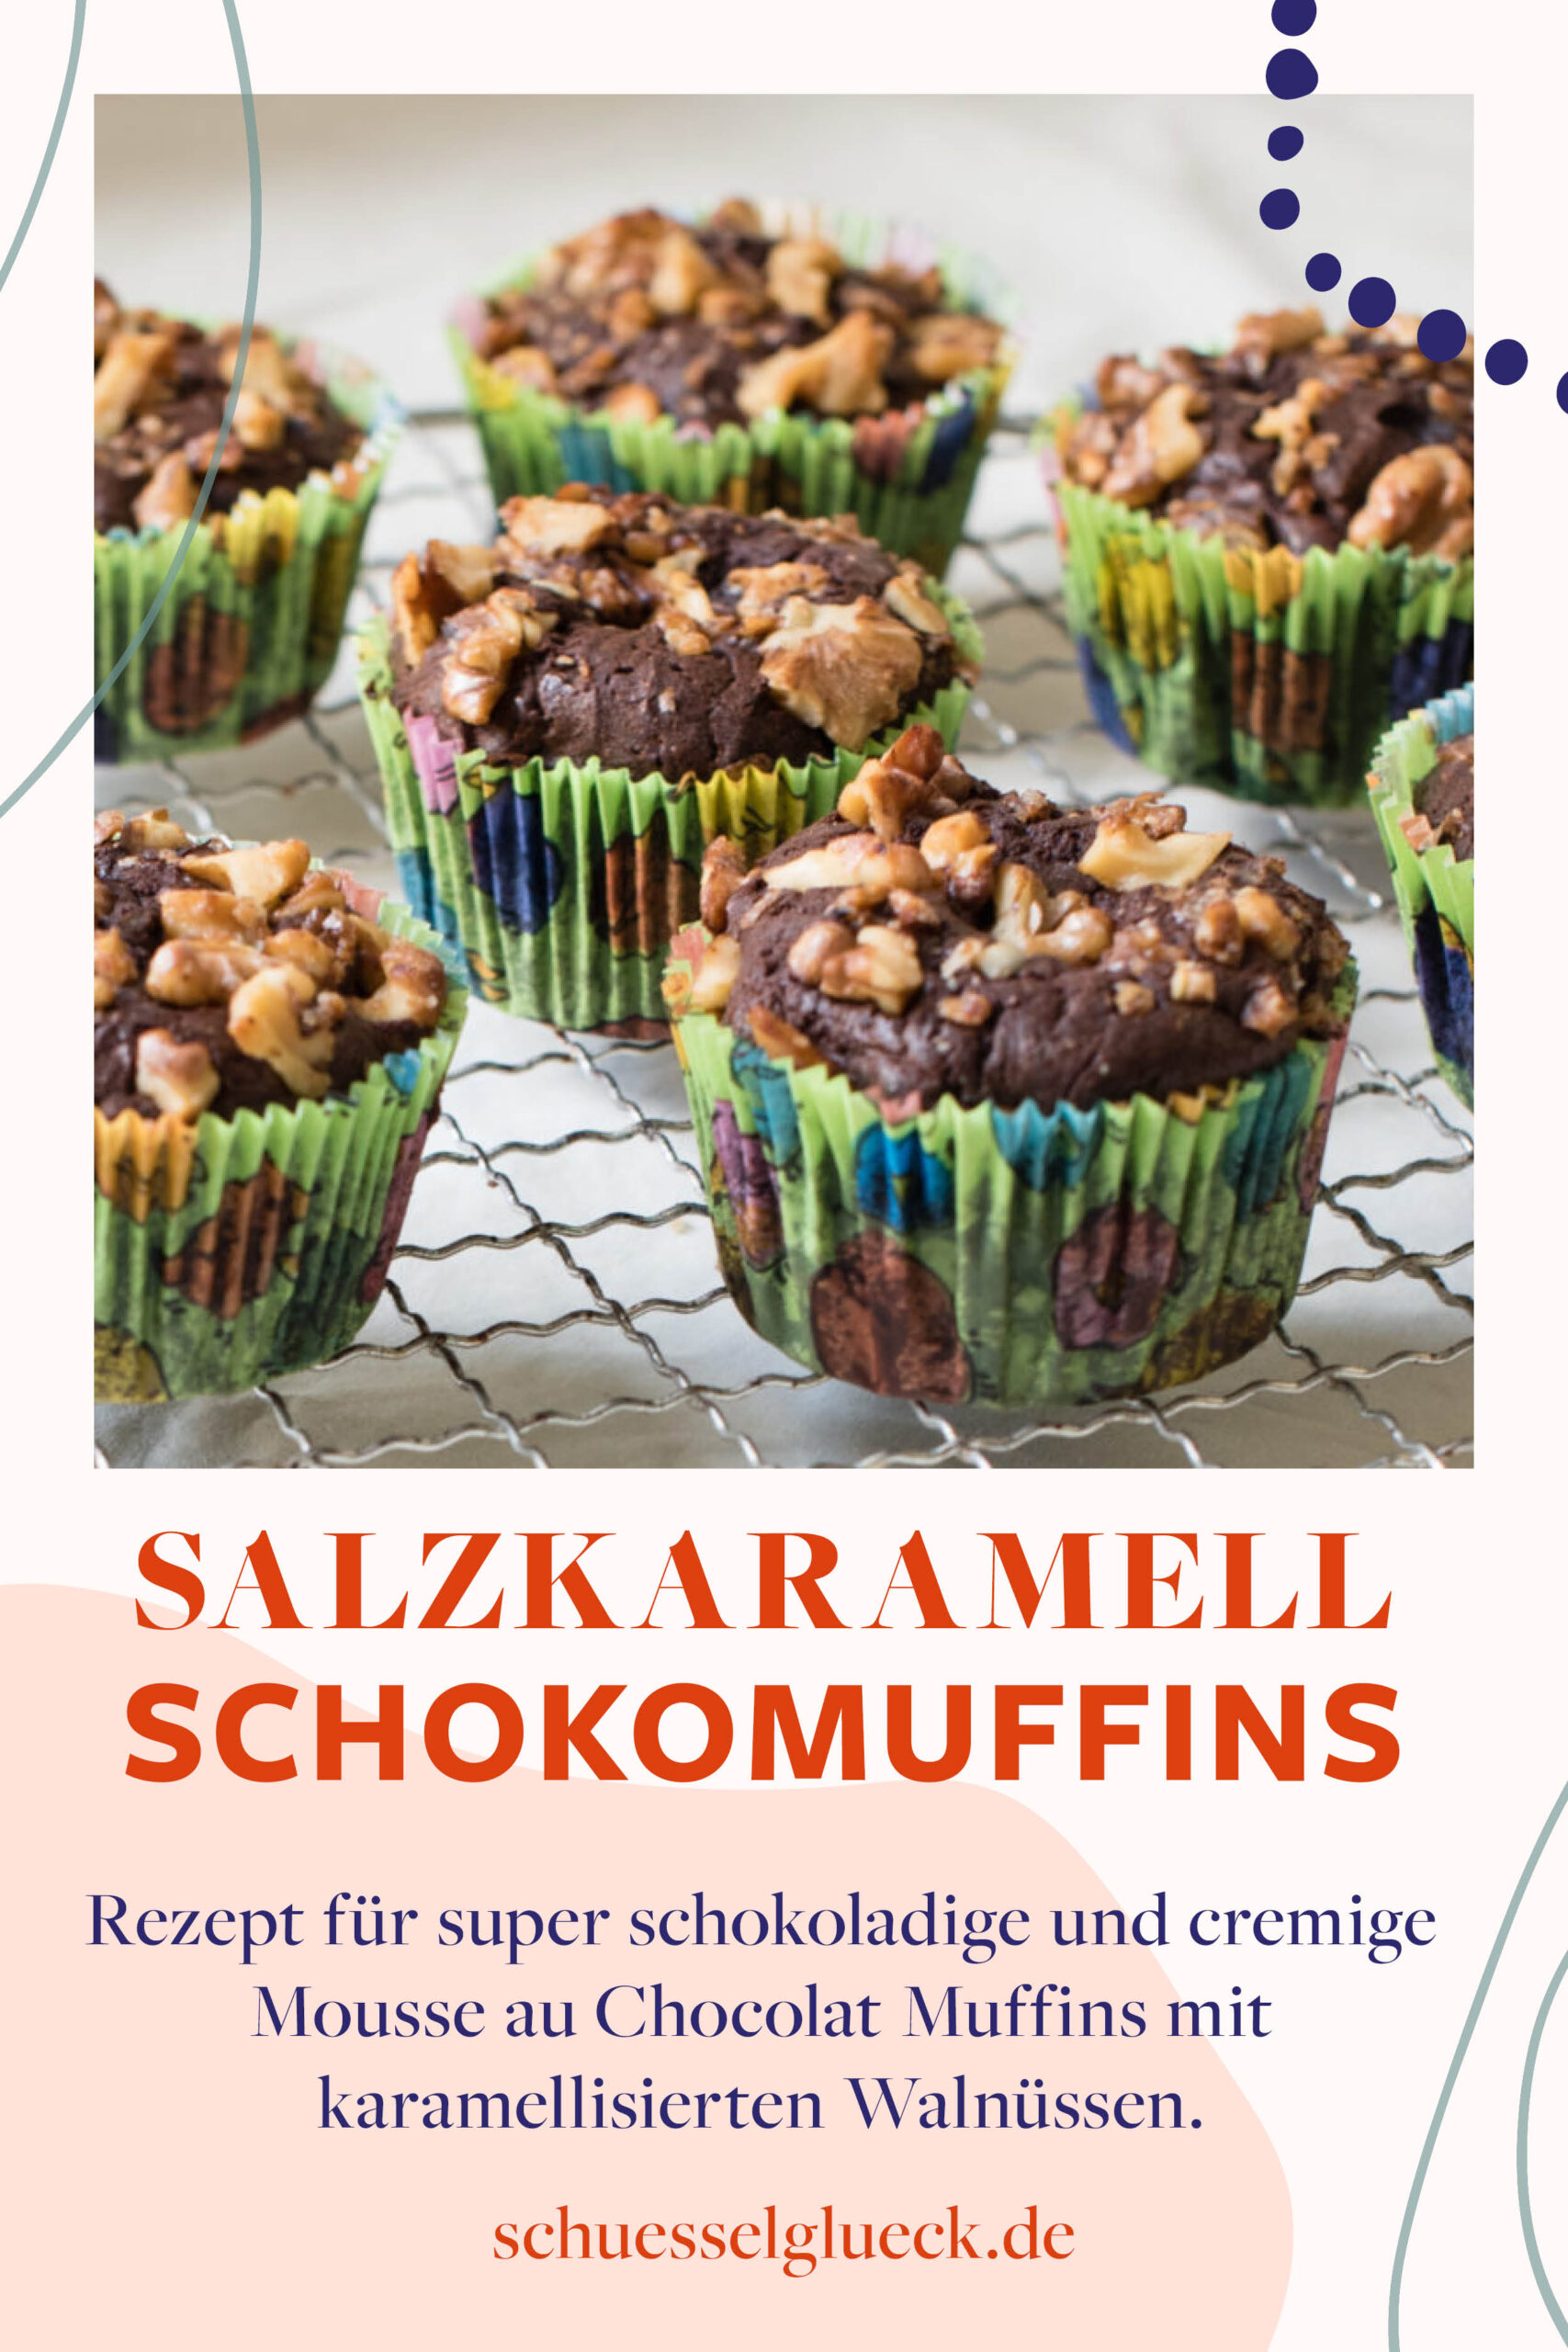 Superschokoladige Schokomuffins – Mousse au chocolat im Muffinkostüm